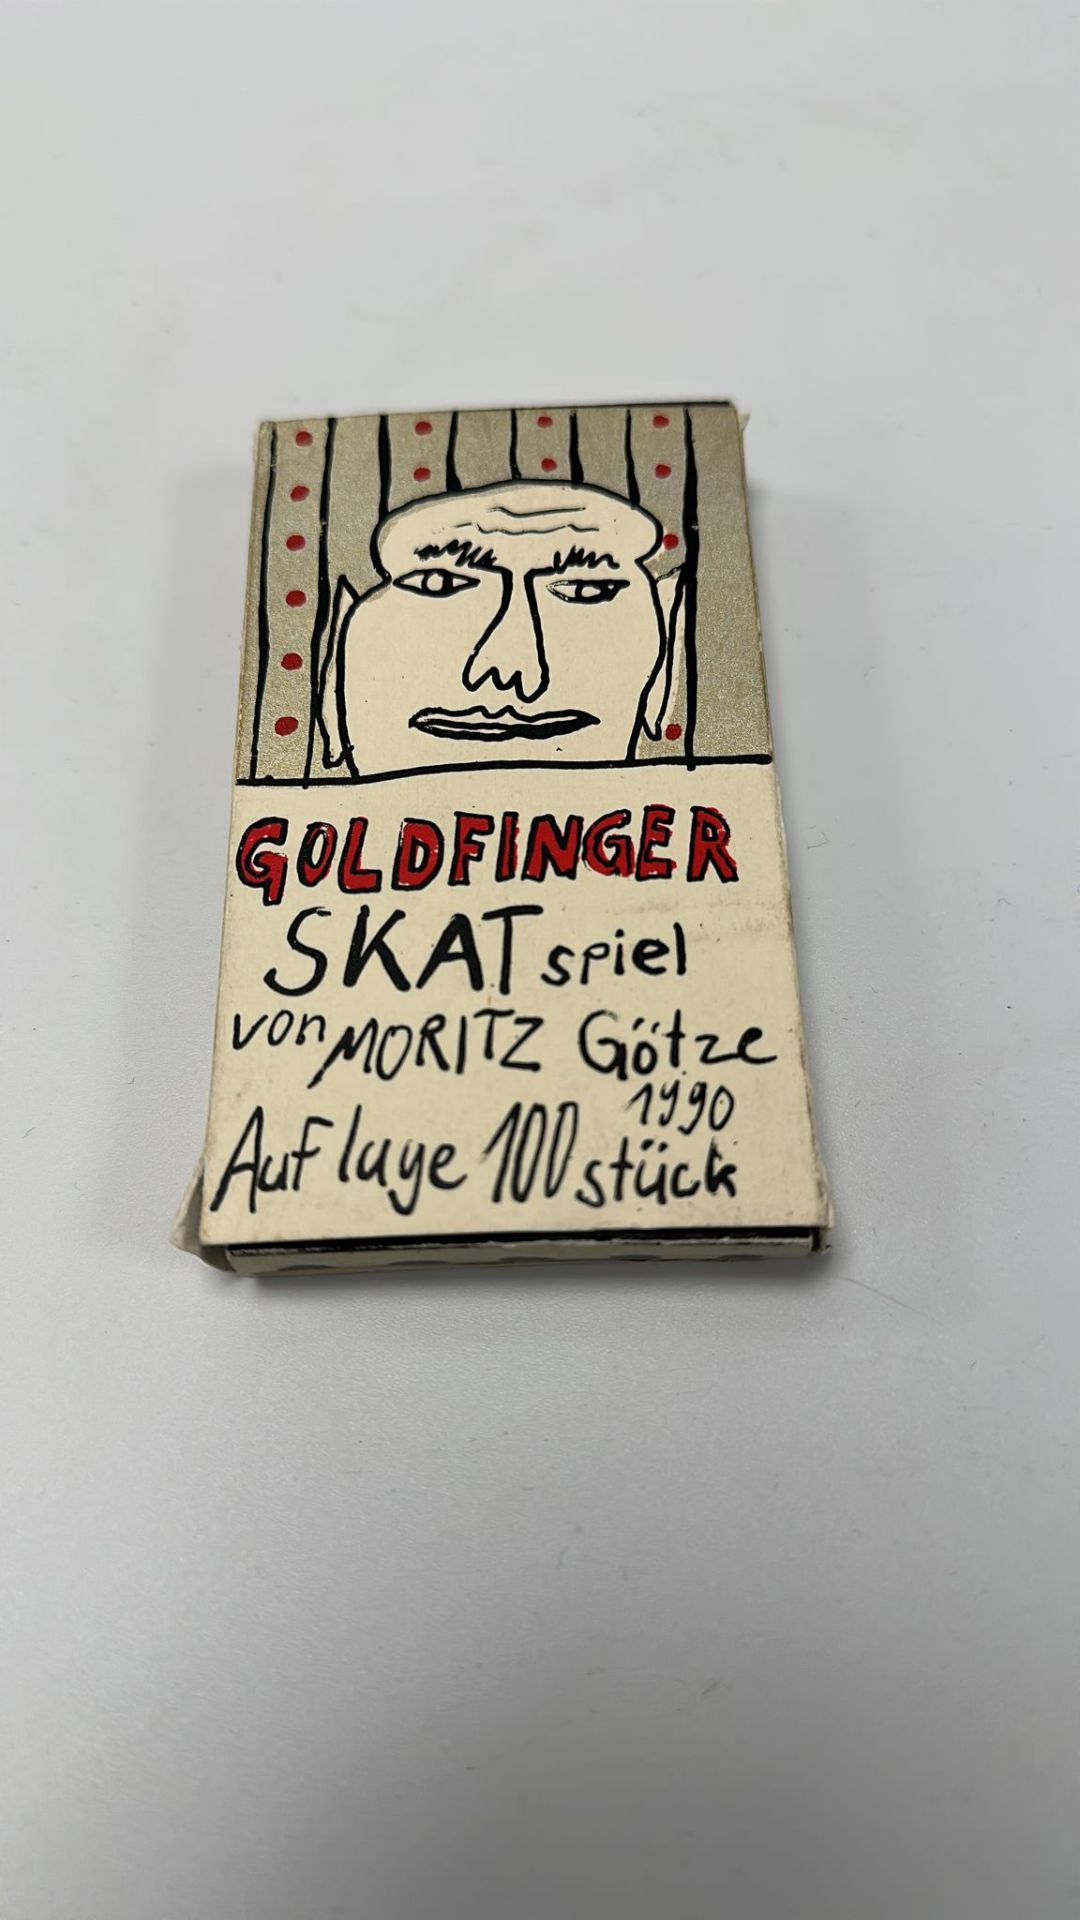 Skatspiel "Goldfinder" (Moritz Götze, 1990) - Image 2 of 6